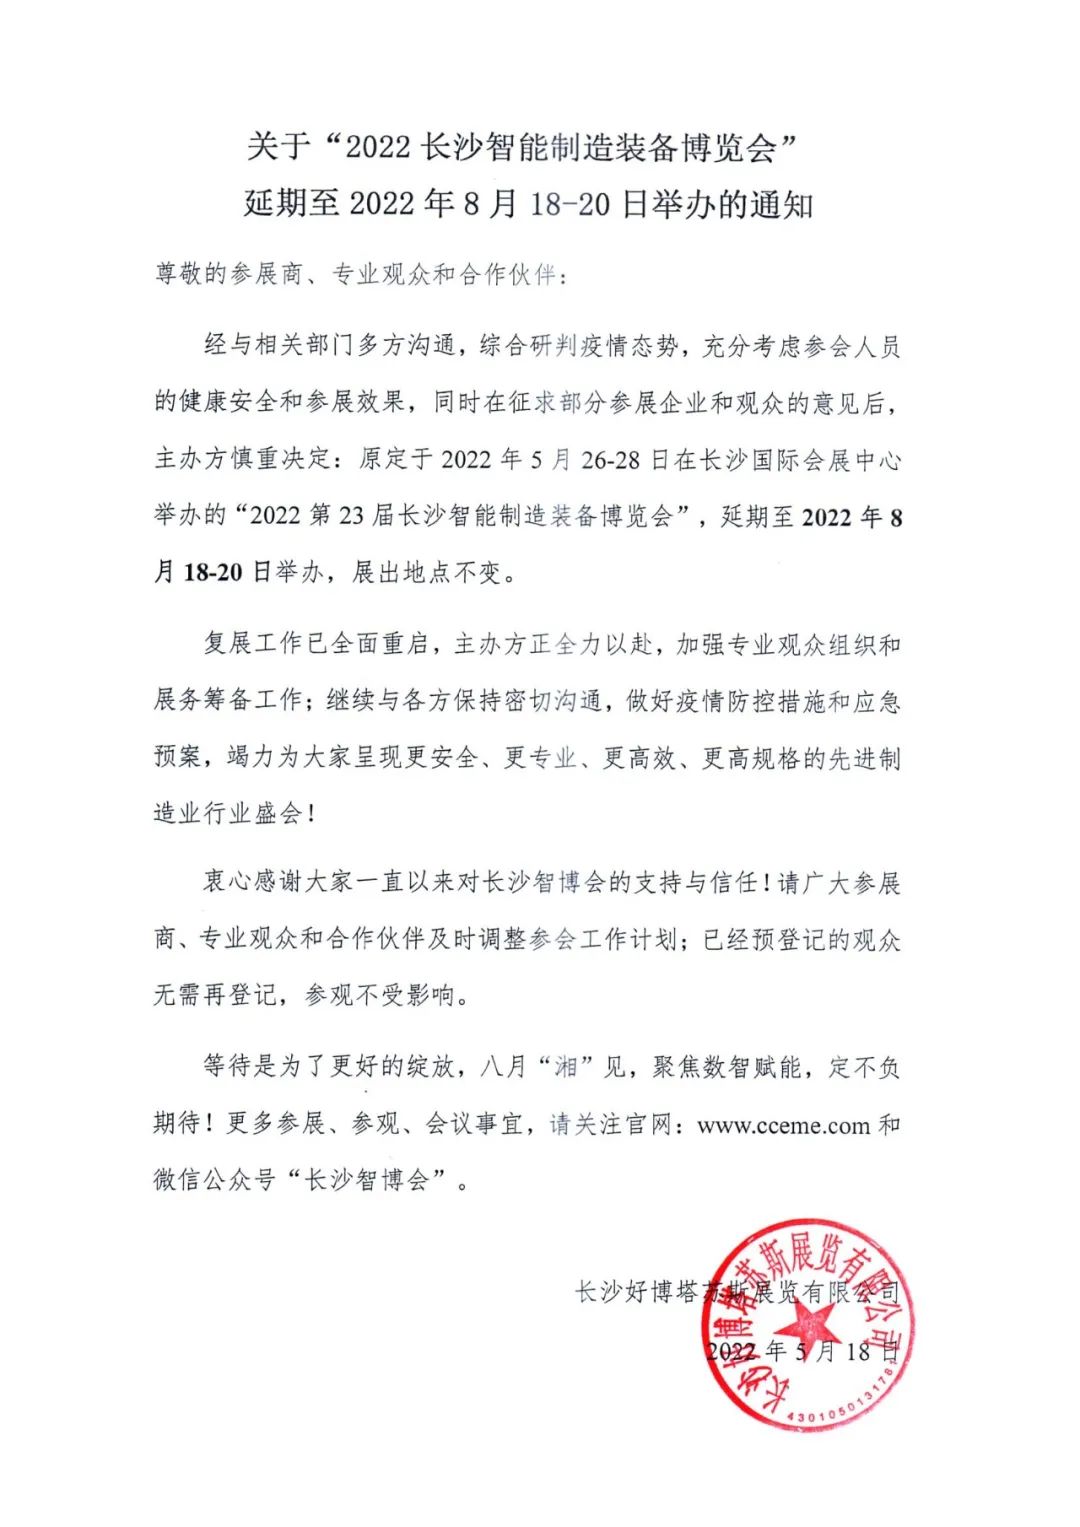 关于长沙智博会延期至2022年8月18-20日举办的通知